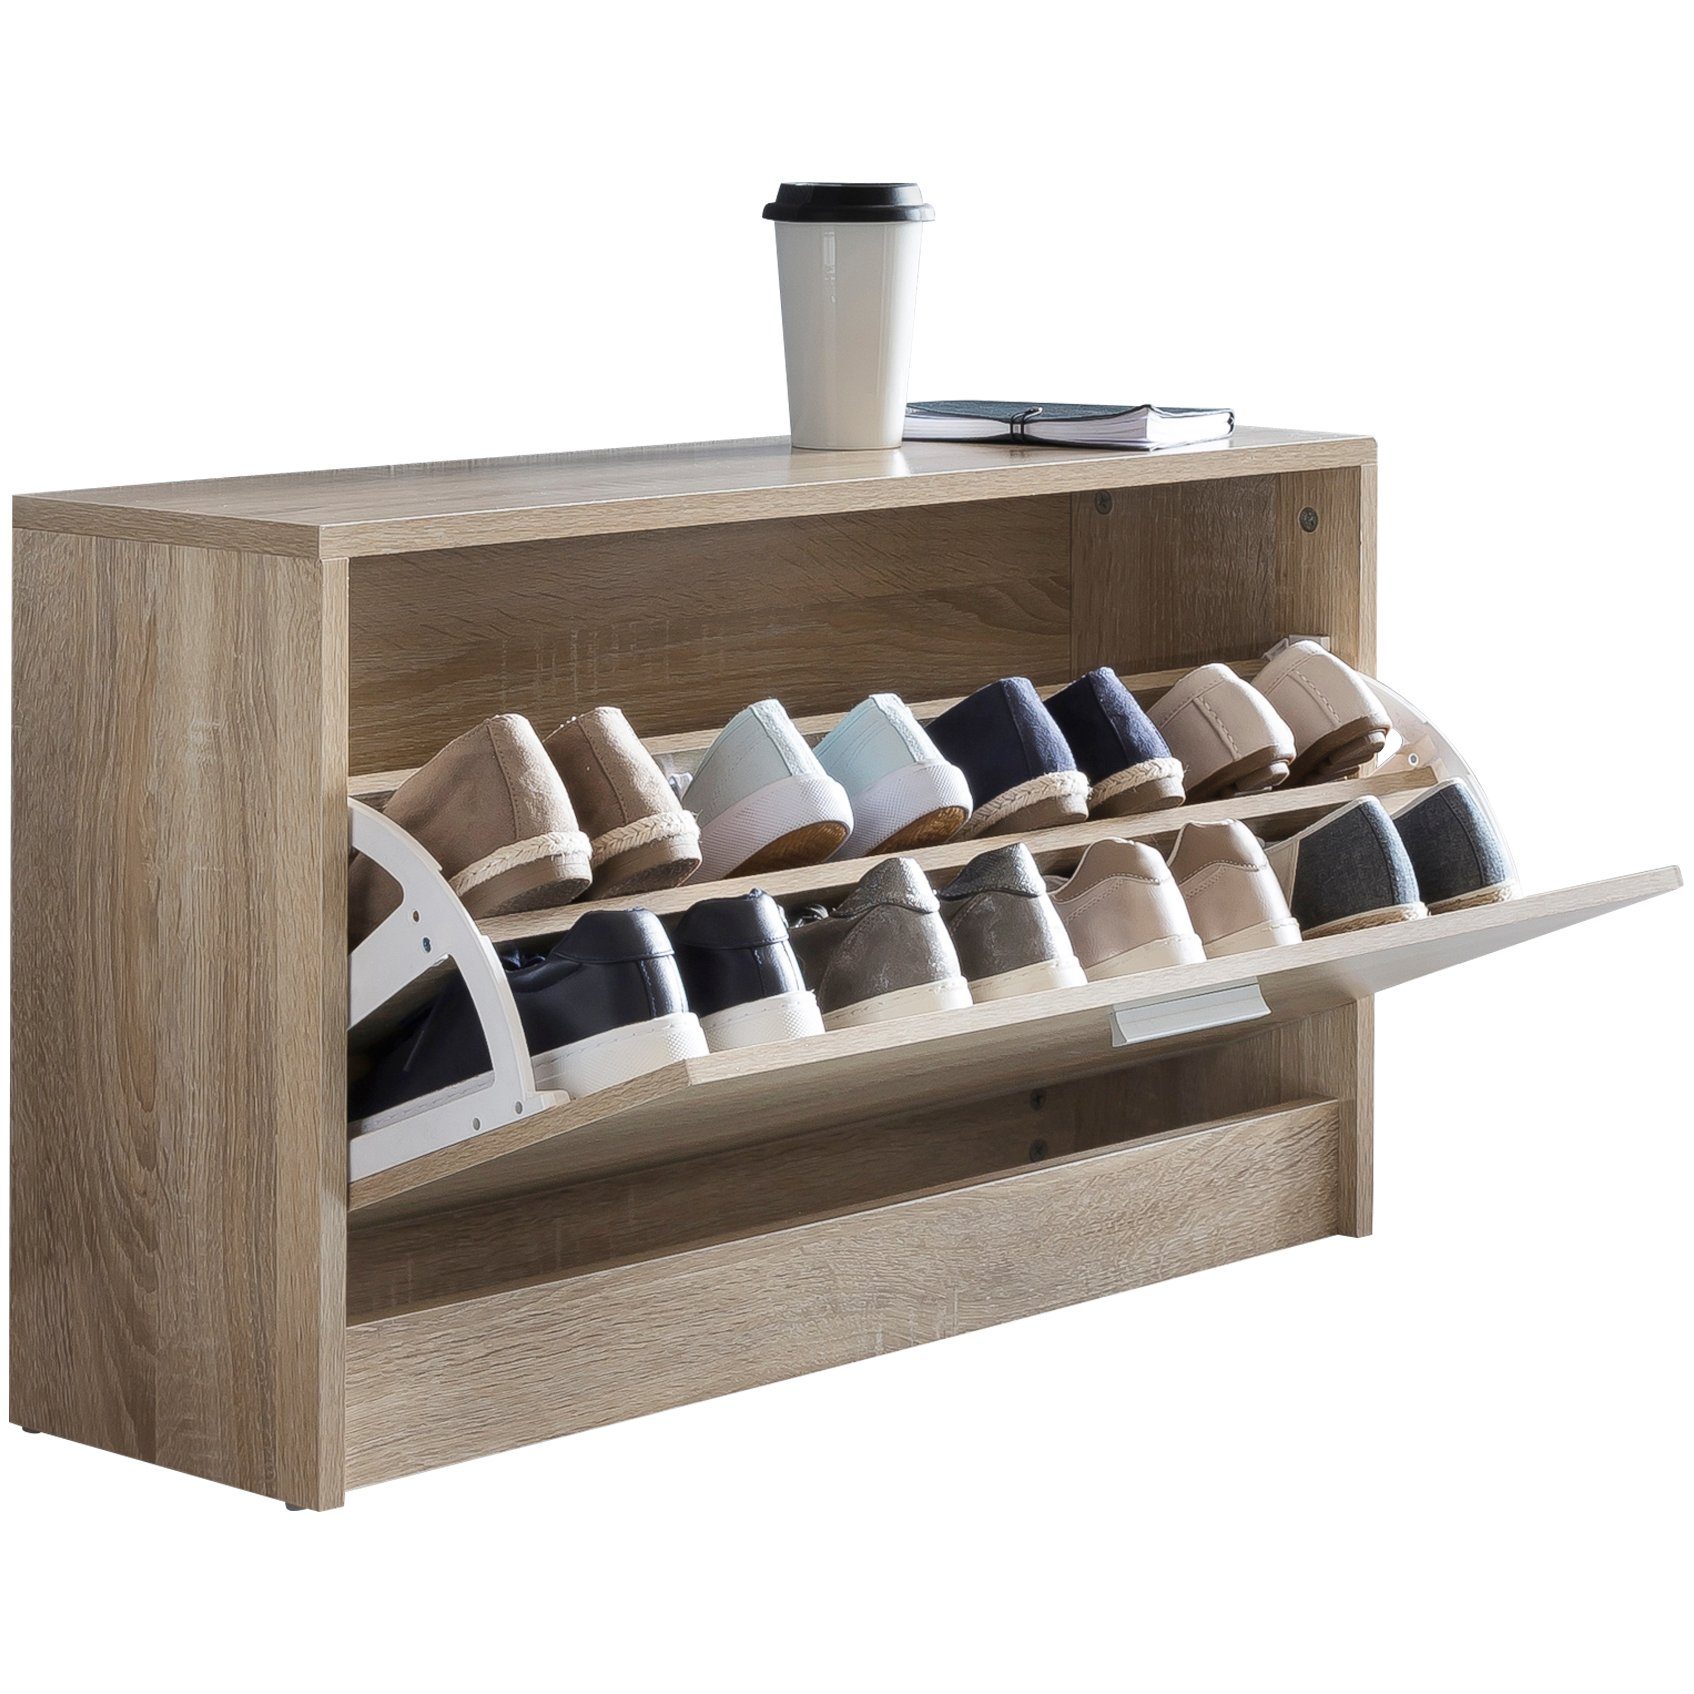 KADIMA DESIGN Schuhschrank Holz Schuhkipper Bank mit Ablagefach & 2 Unterfächern Beige | Schuhschränke